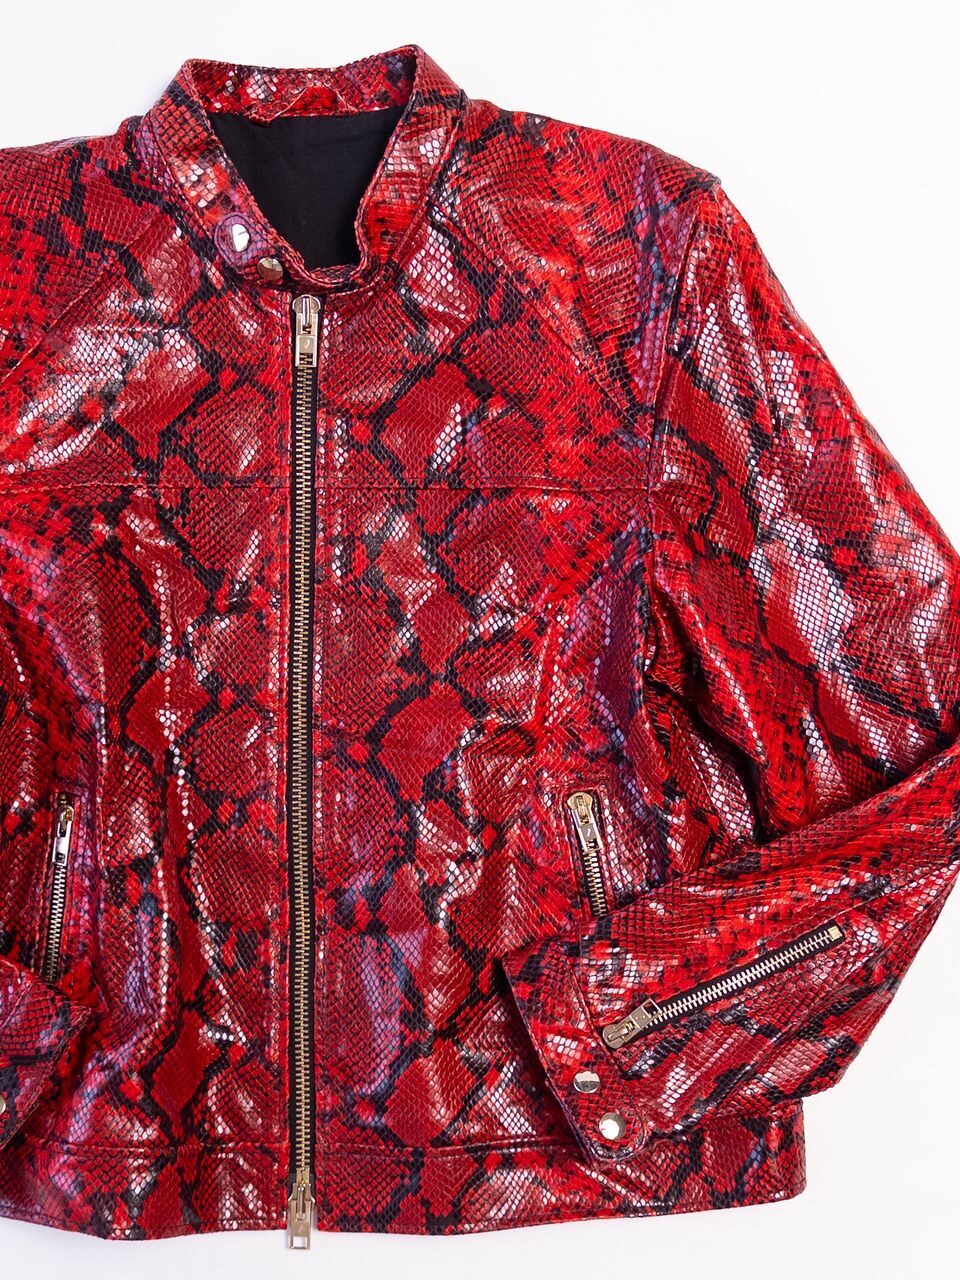 Куртка из натуральной кожи воротник стойка с рисунком змеиной кожи цвет черный/красный размер EUR XL (rus 52-54) на рост 170-176 см H&M